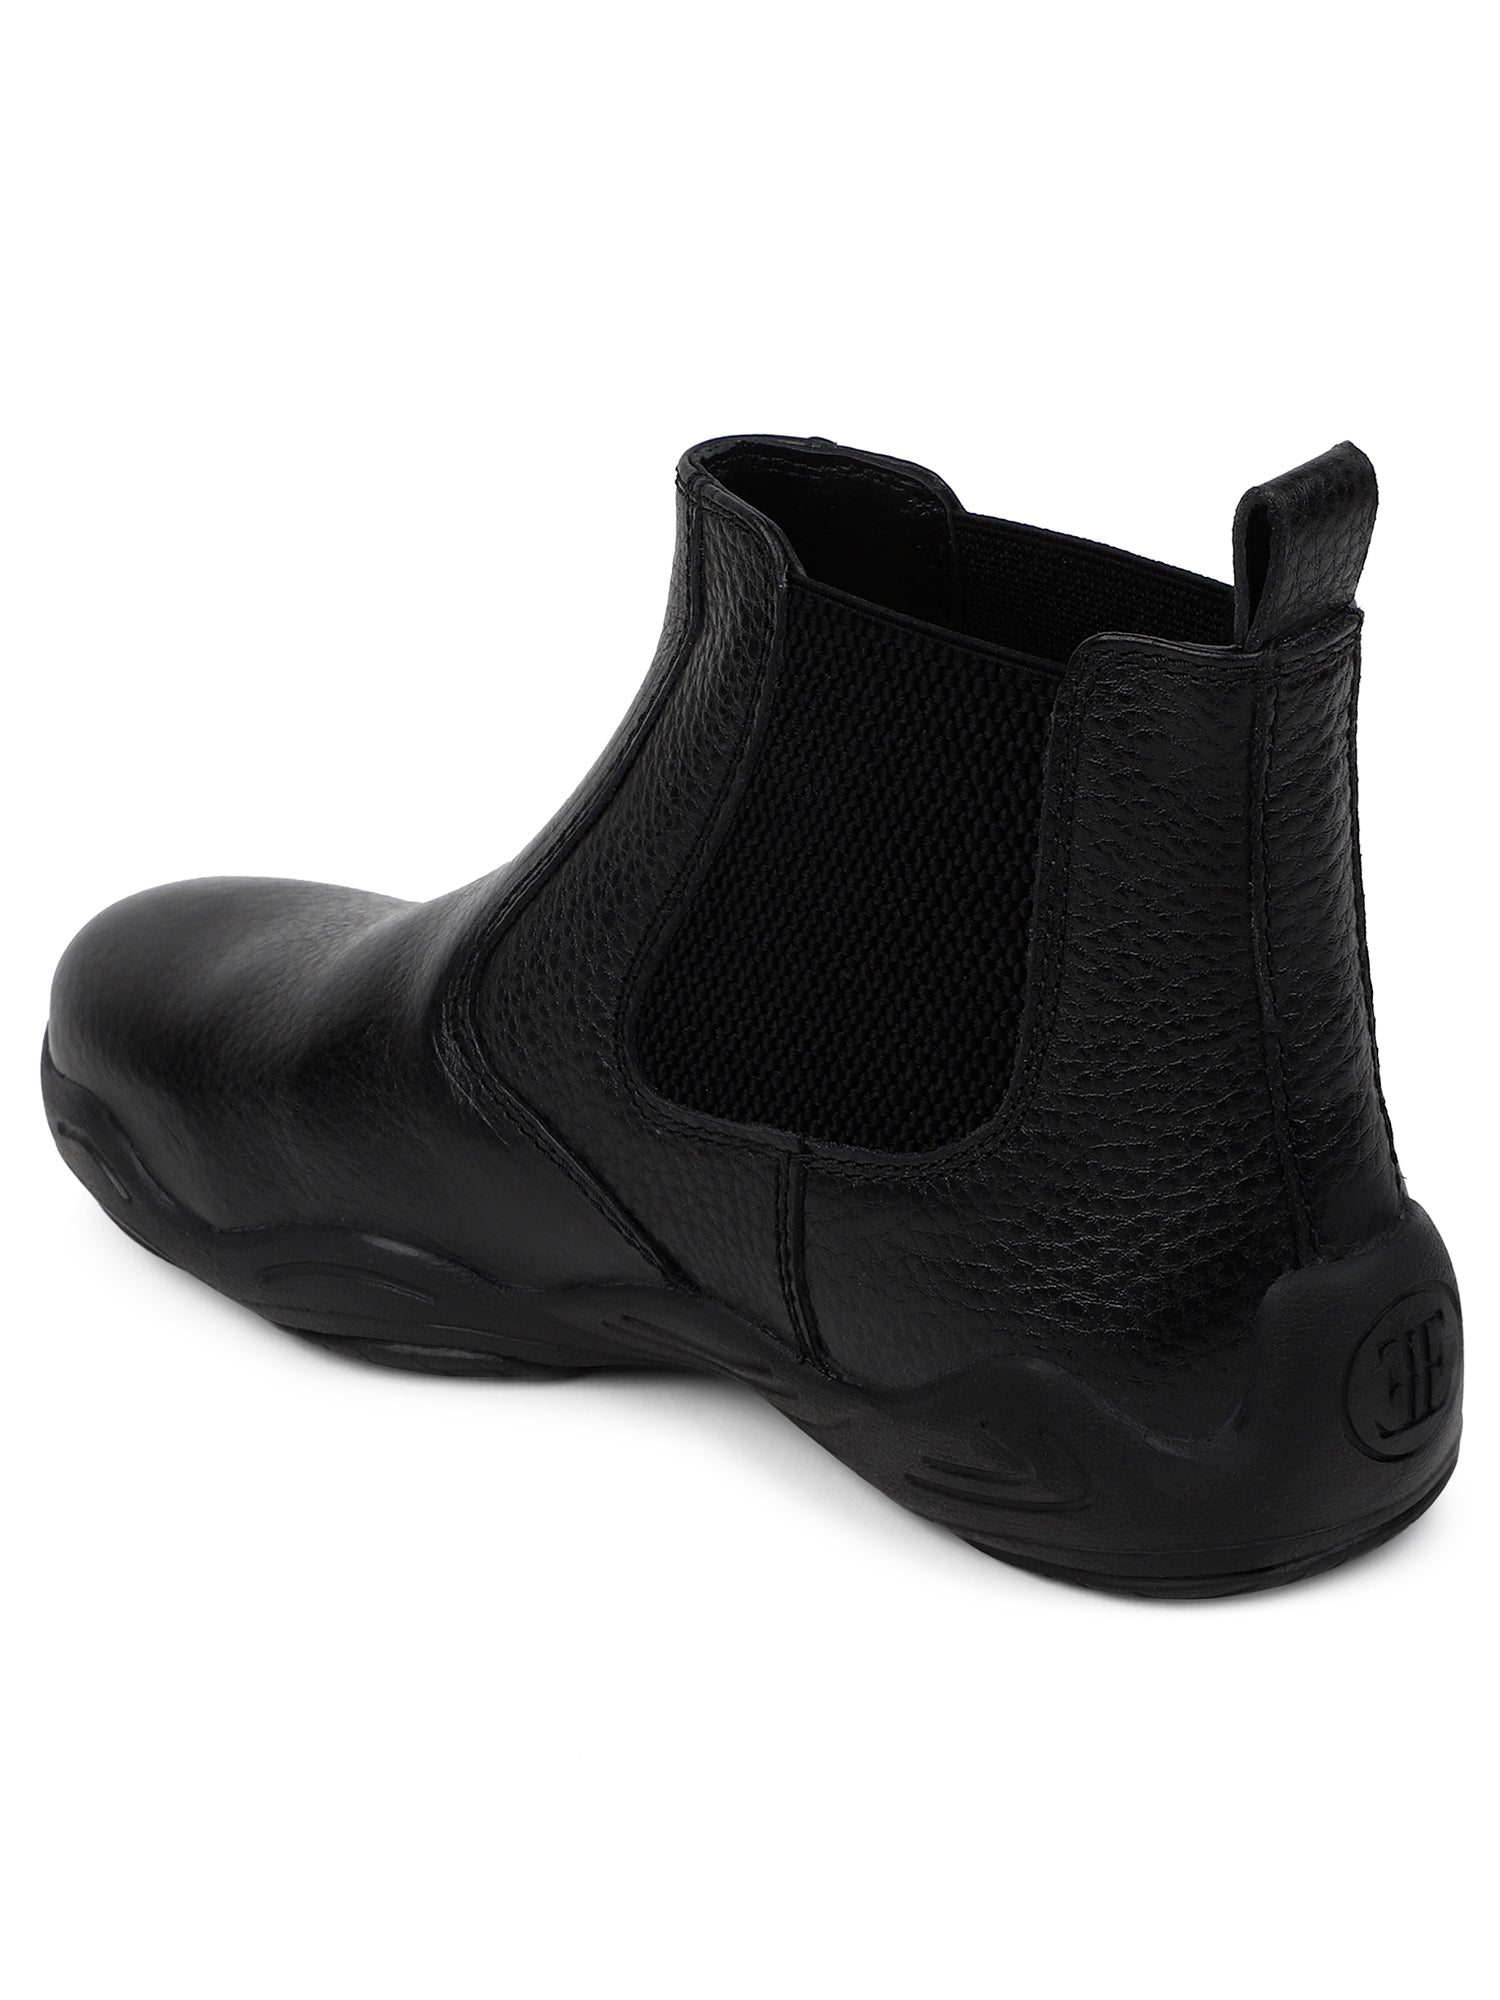 Ezok Strech black chelsea casual booots shoes